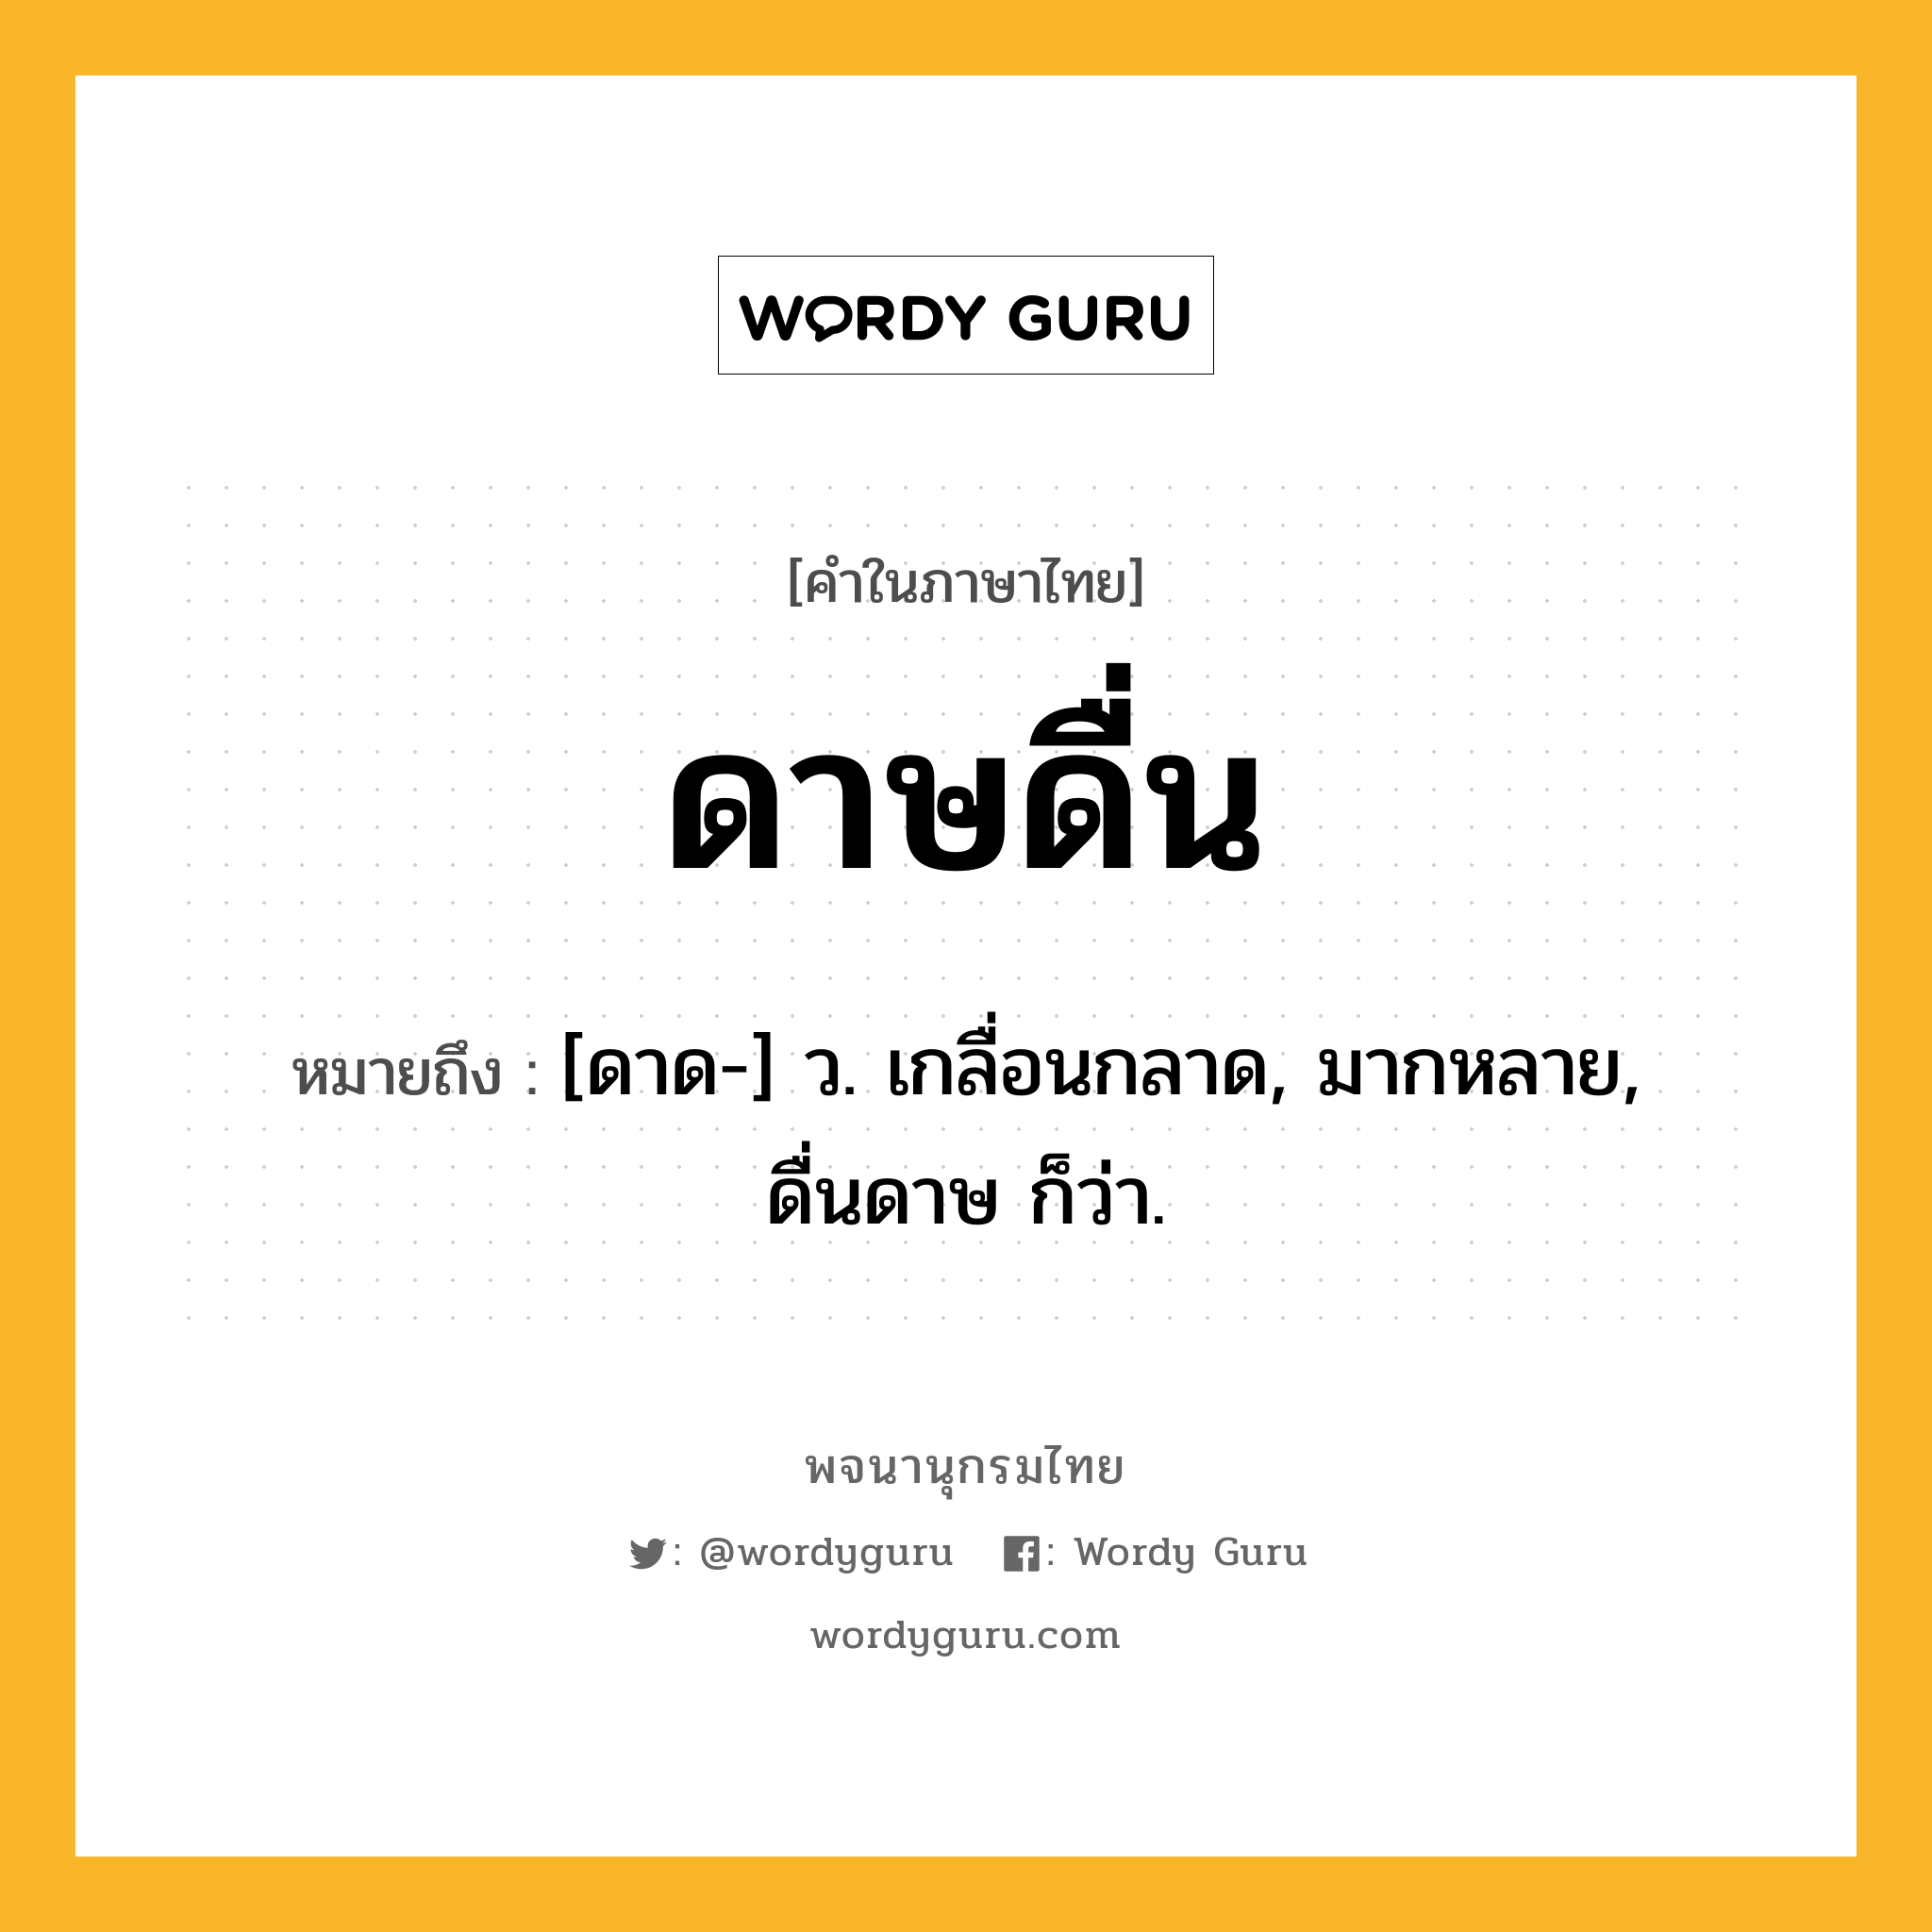 ดาษดื่น ความหมาย หมายถึงอะไร?, คำในภาษาไทย ดาษดื่น หมายถึง [ดาด-] ว. เกลื่อนกลาด, มากหลาย, ดื่นดาษ ก็ว่า.